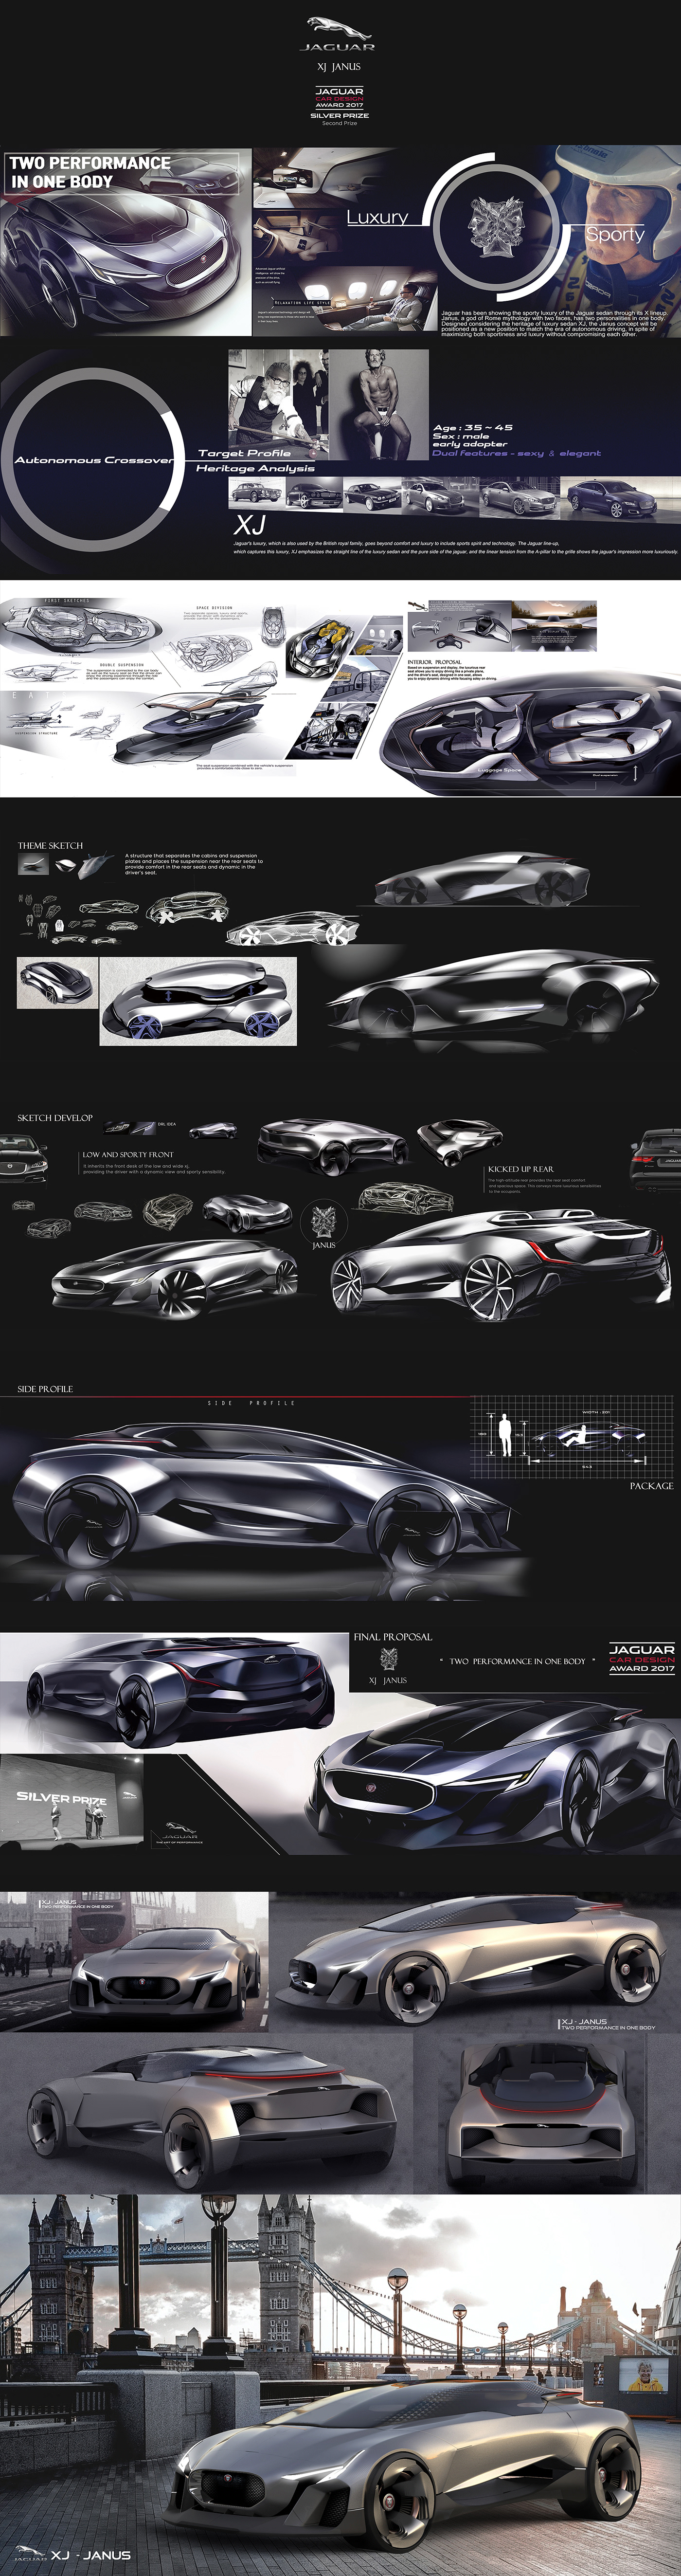 concept car volkswagen car Benz Audi jaguar BMW supercar design bentley